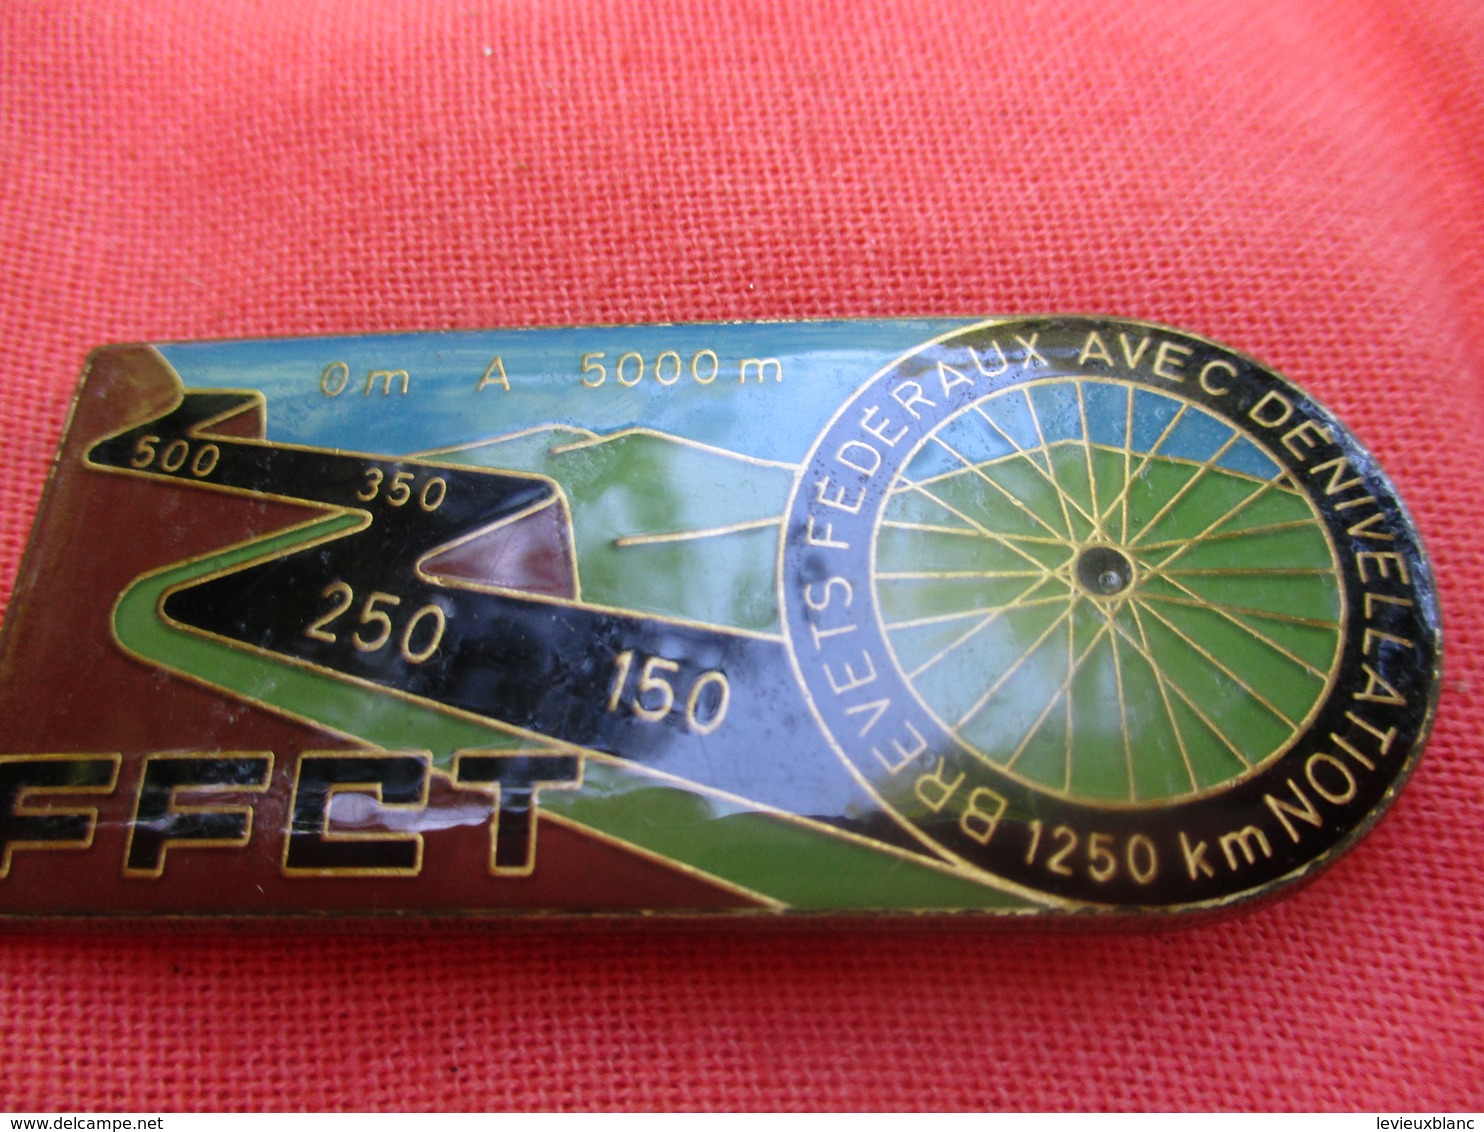 Médaille De Sport/Cyclisme/Brevets Federaux Avec Dénivellation/1250 Km /Beraudy 63 AMBERT/vers 1980-90      SPO298 - Wielrennen